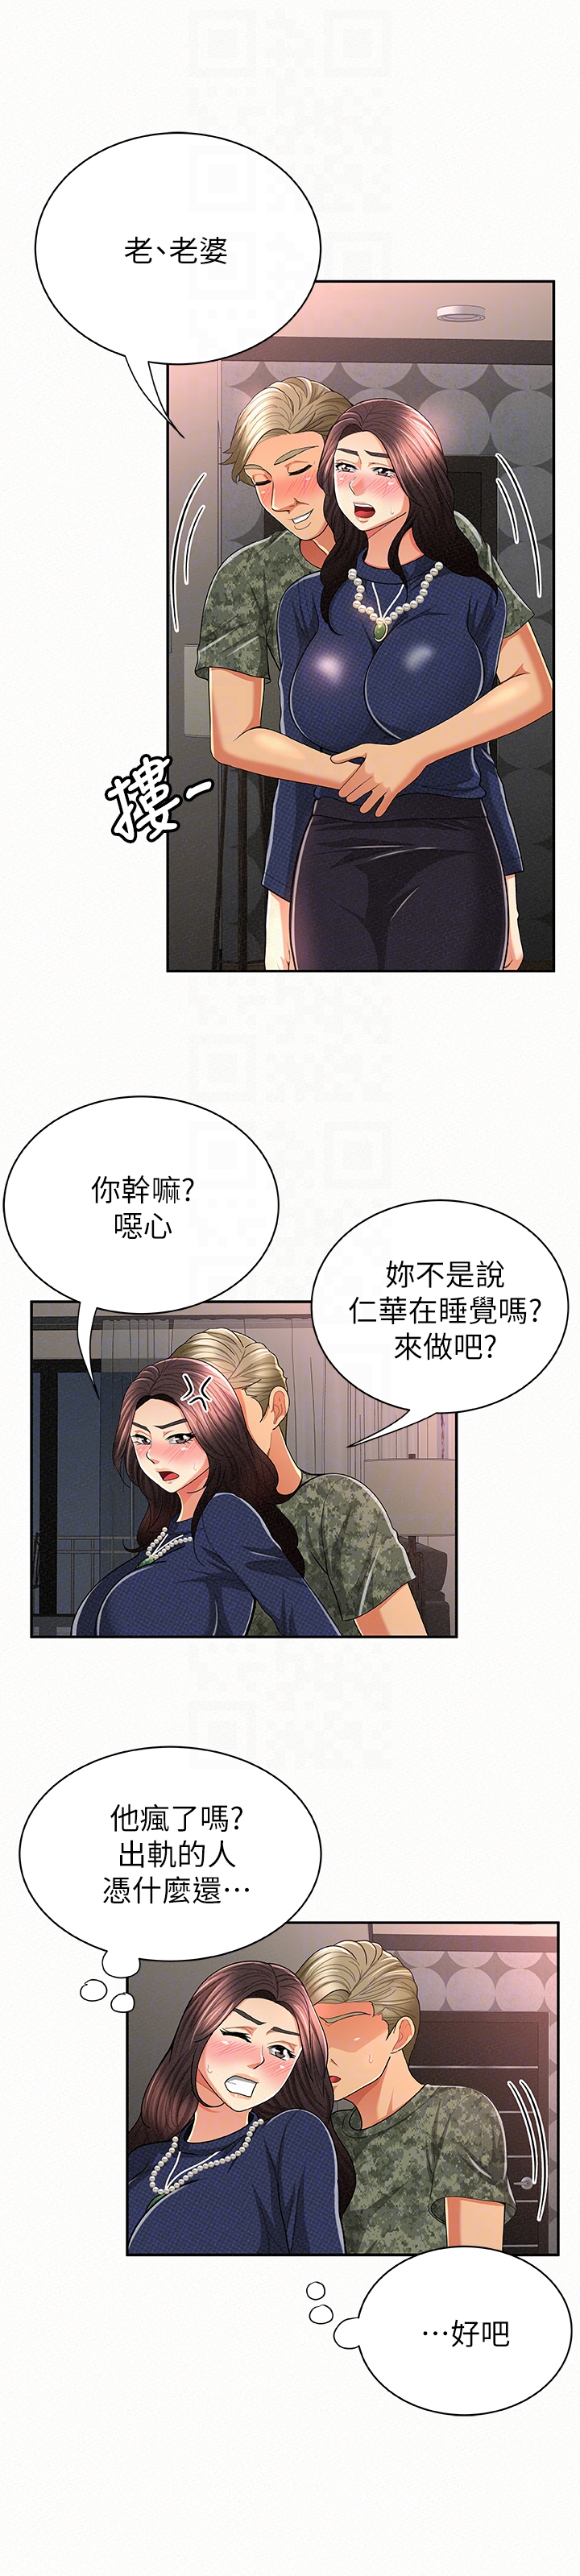 韩国污漫画 報告夫人 第30话-挑逗老公的景淑 23